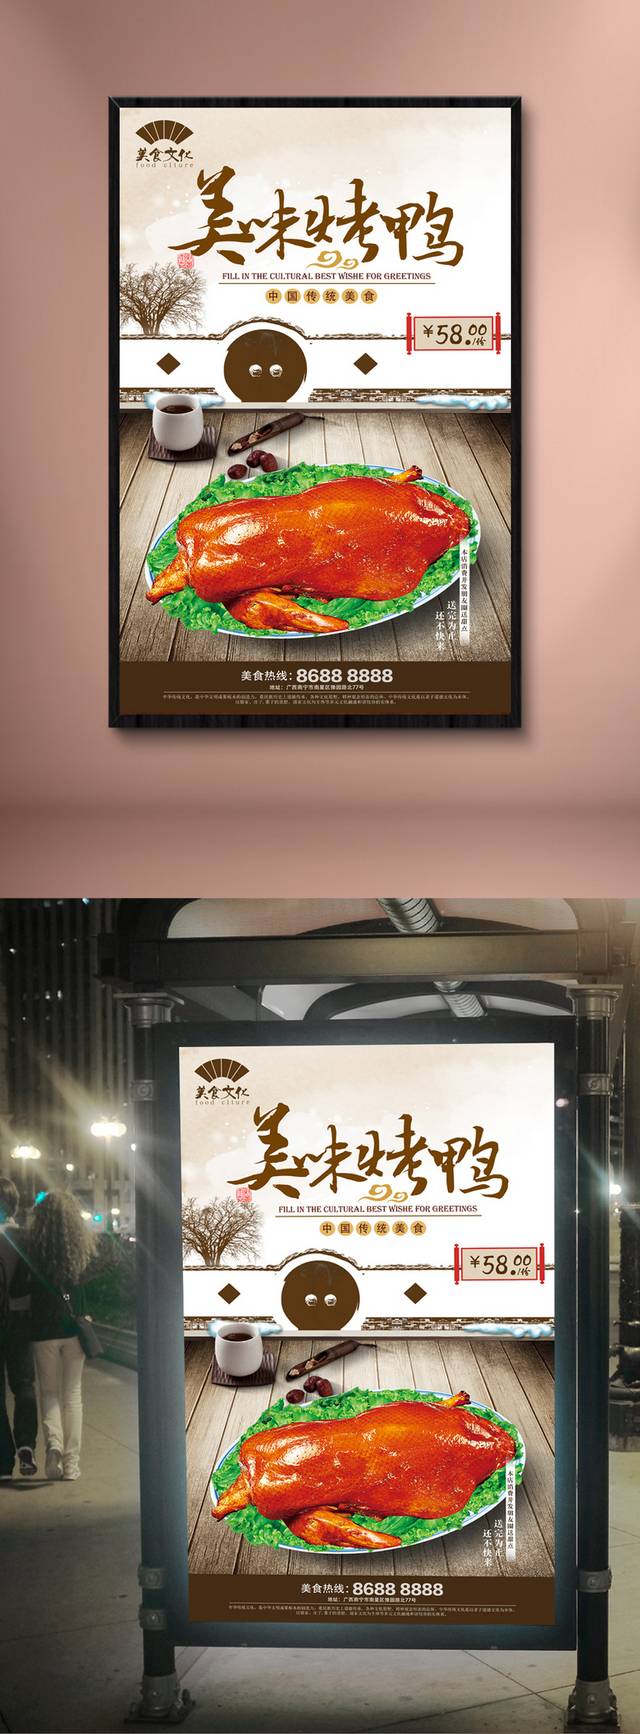 中式风格烤鸭促销宣传海报设计